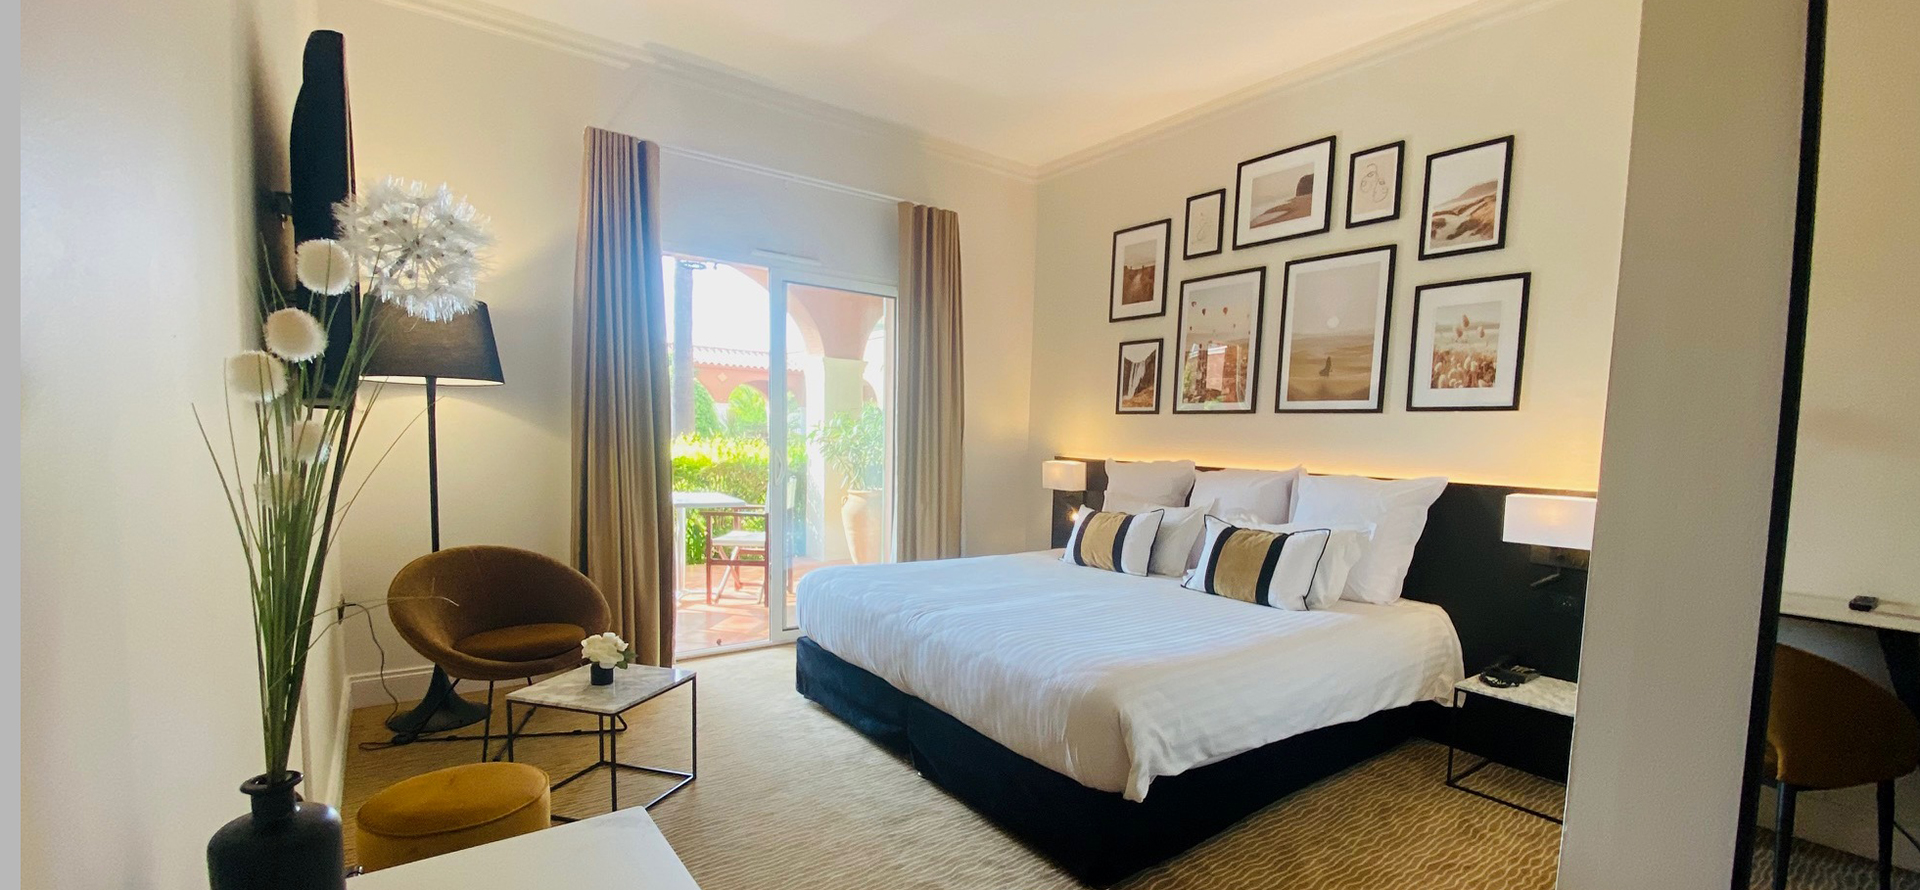 Habitación confort con vistas al Golf del hotel de 4 estrellas de Cap d'Agde: el Palmyra Golf